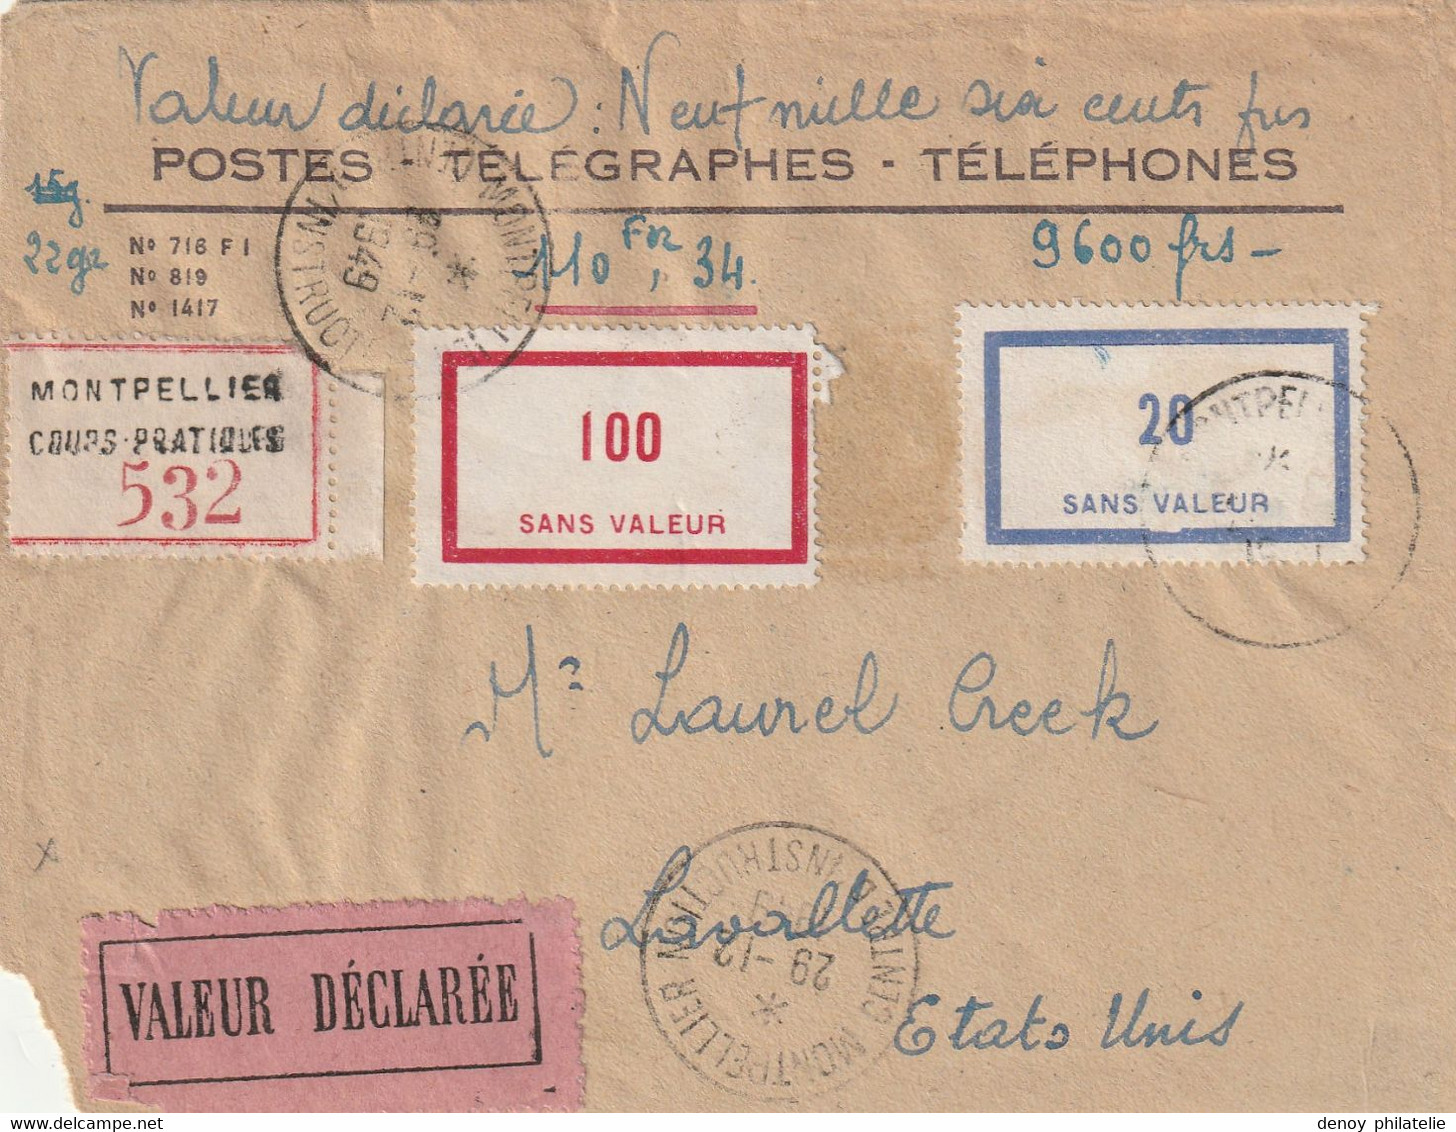 Lettre Recommandée Valeur Declarée 9600 Francs 22 Grammes Du 29 12 1949 Pour Les Usa A F60 RARE + F46 RRR - Fictifs